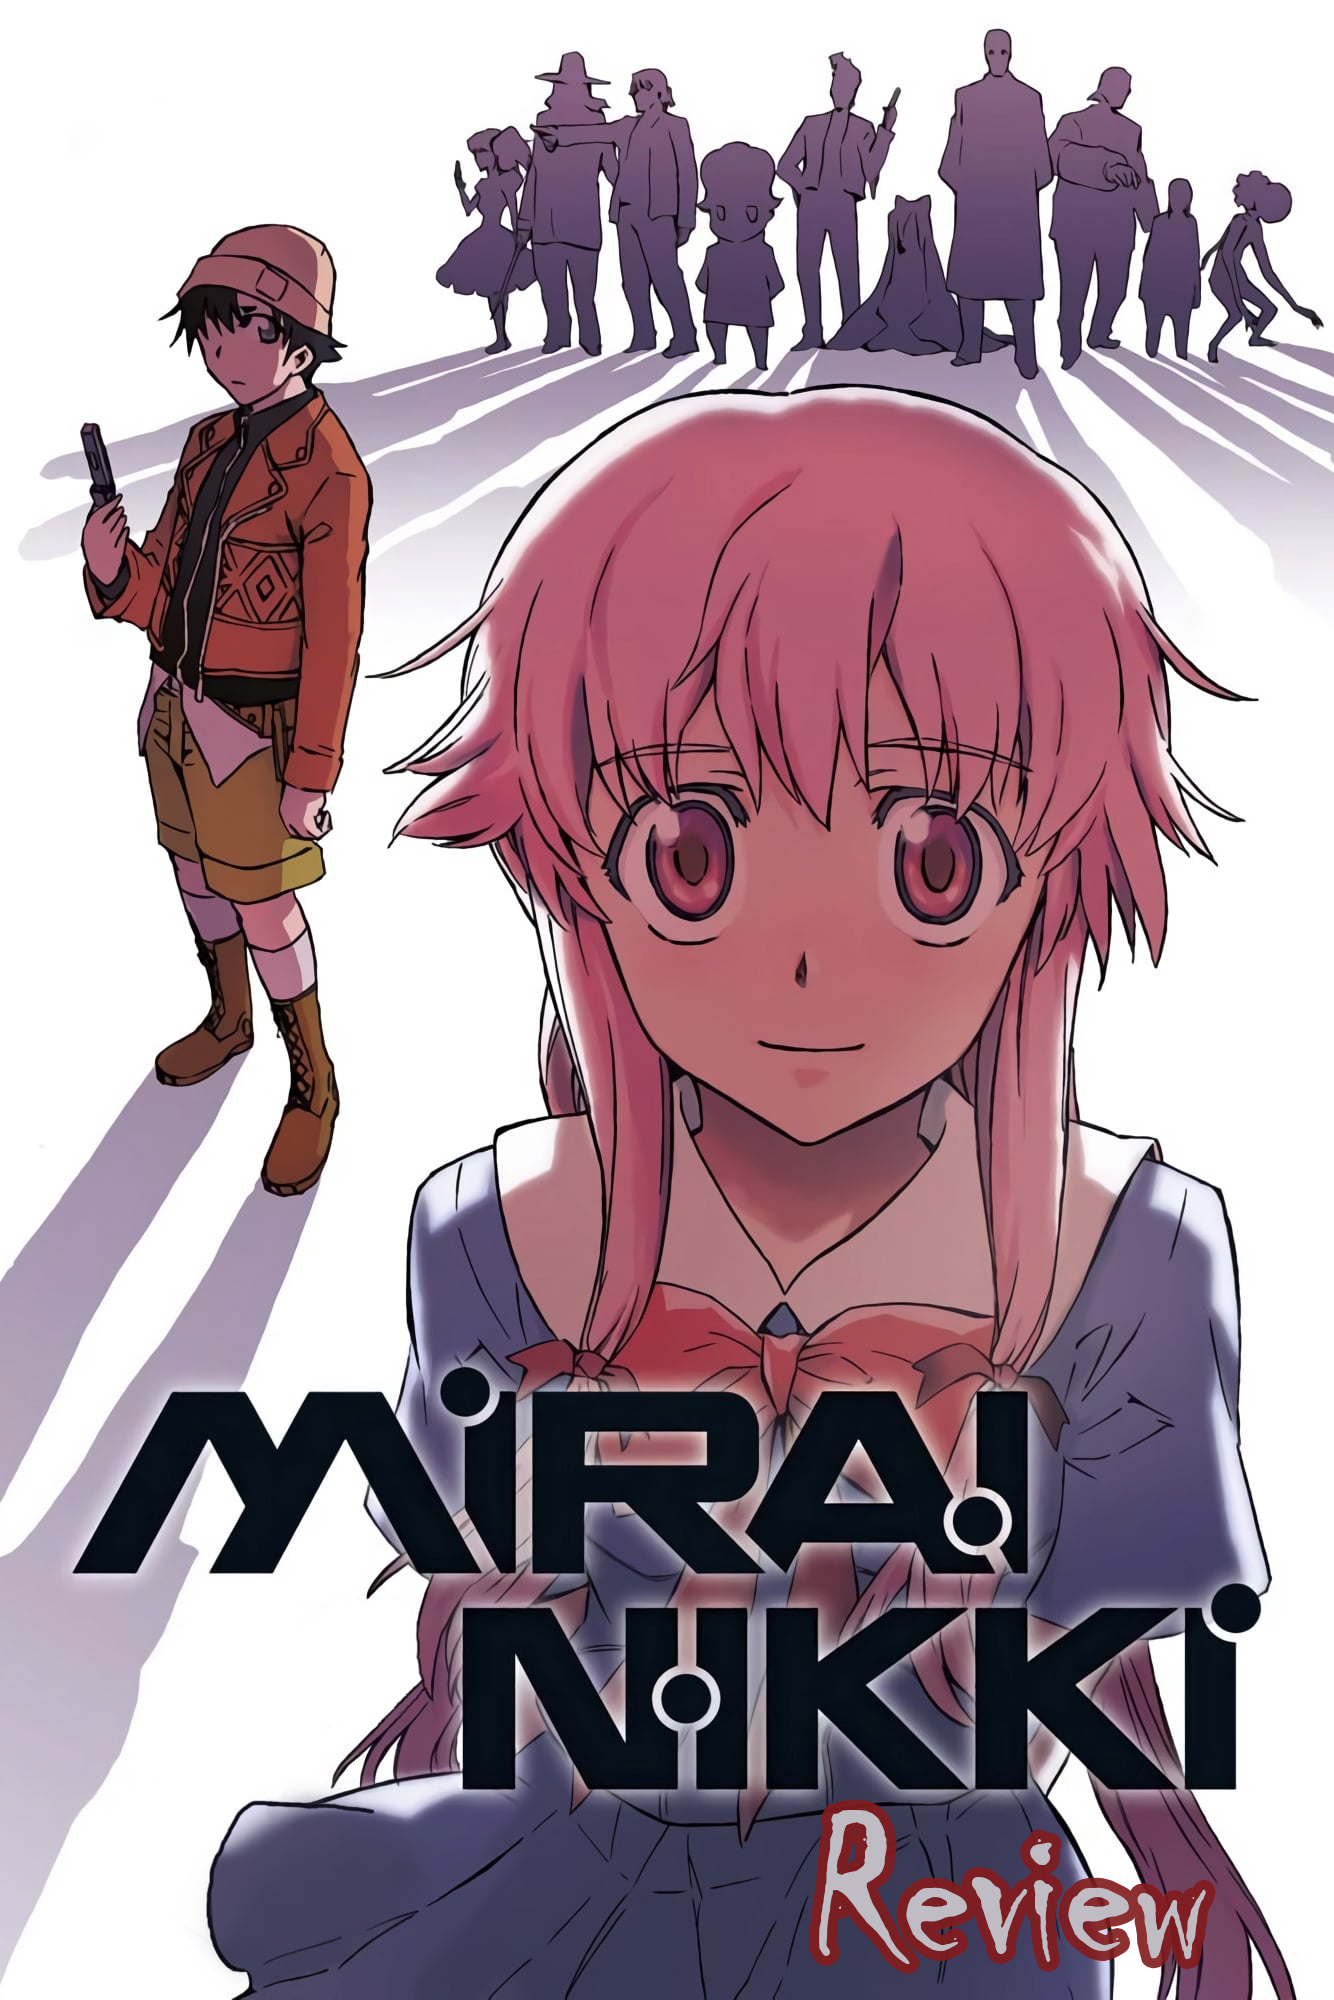 The Future Diary, Mirai Nikki